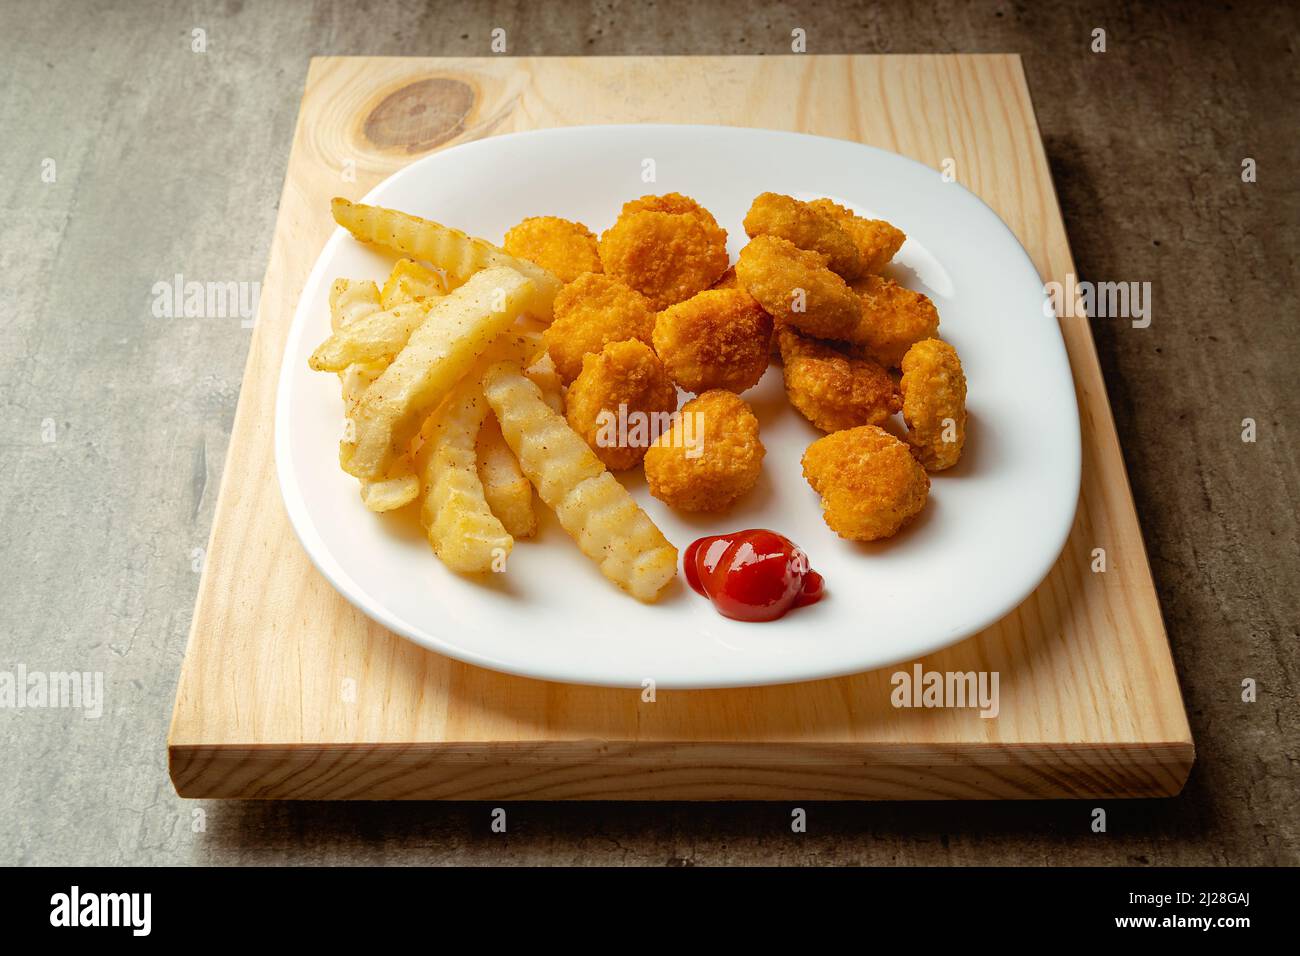 Nuggets de poulet et frites avec un peu de sauce tomate sur une assiette sur une surface en bois, prêts à manger, repas rapide Banque D'Images